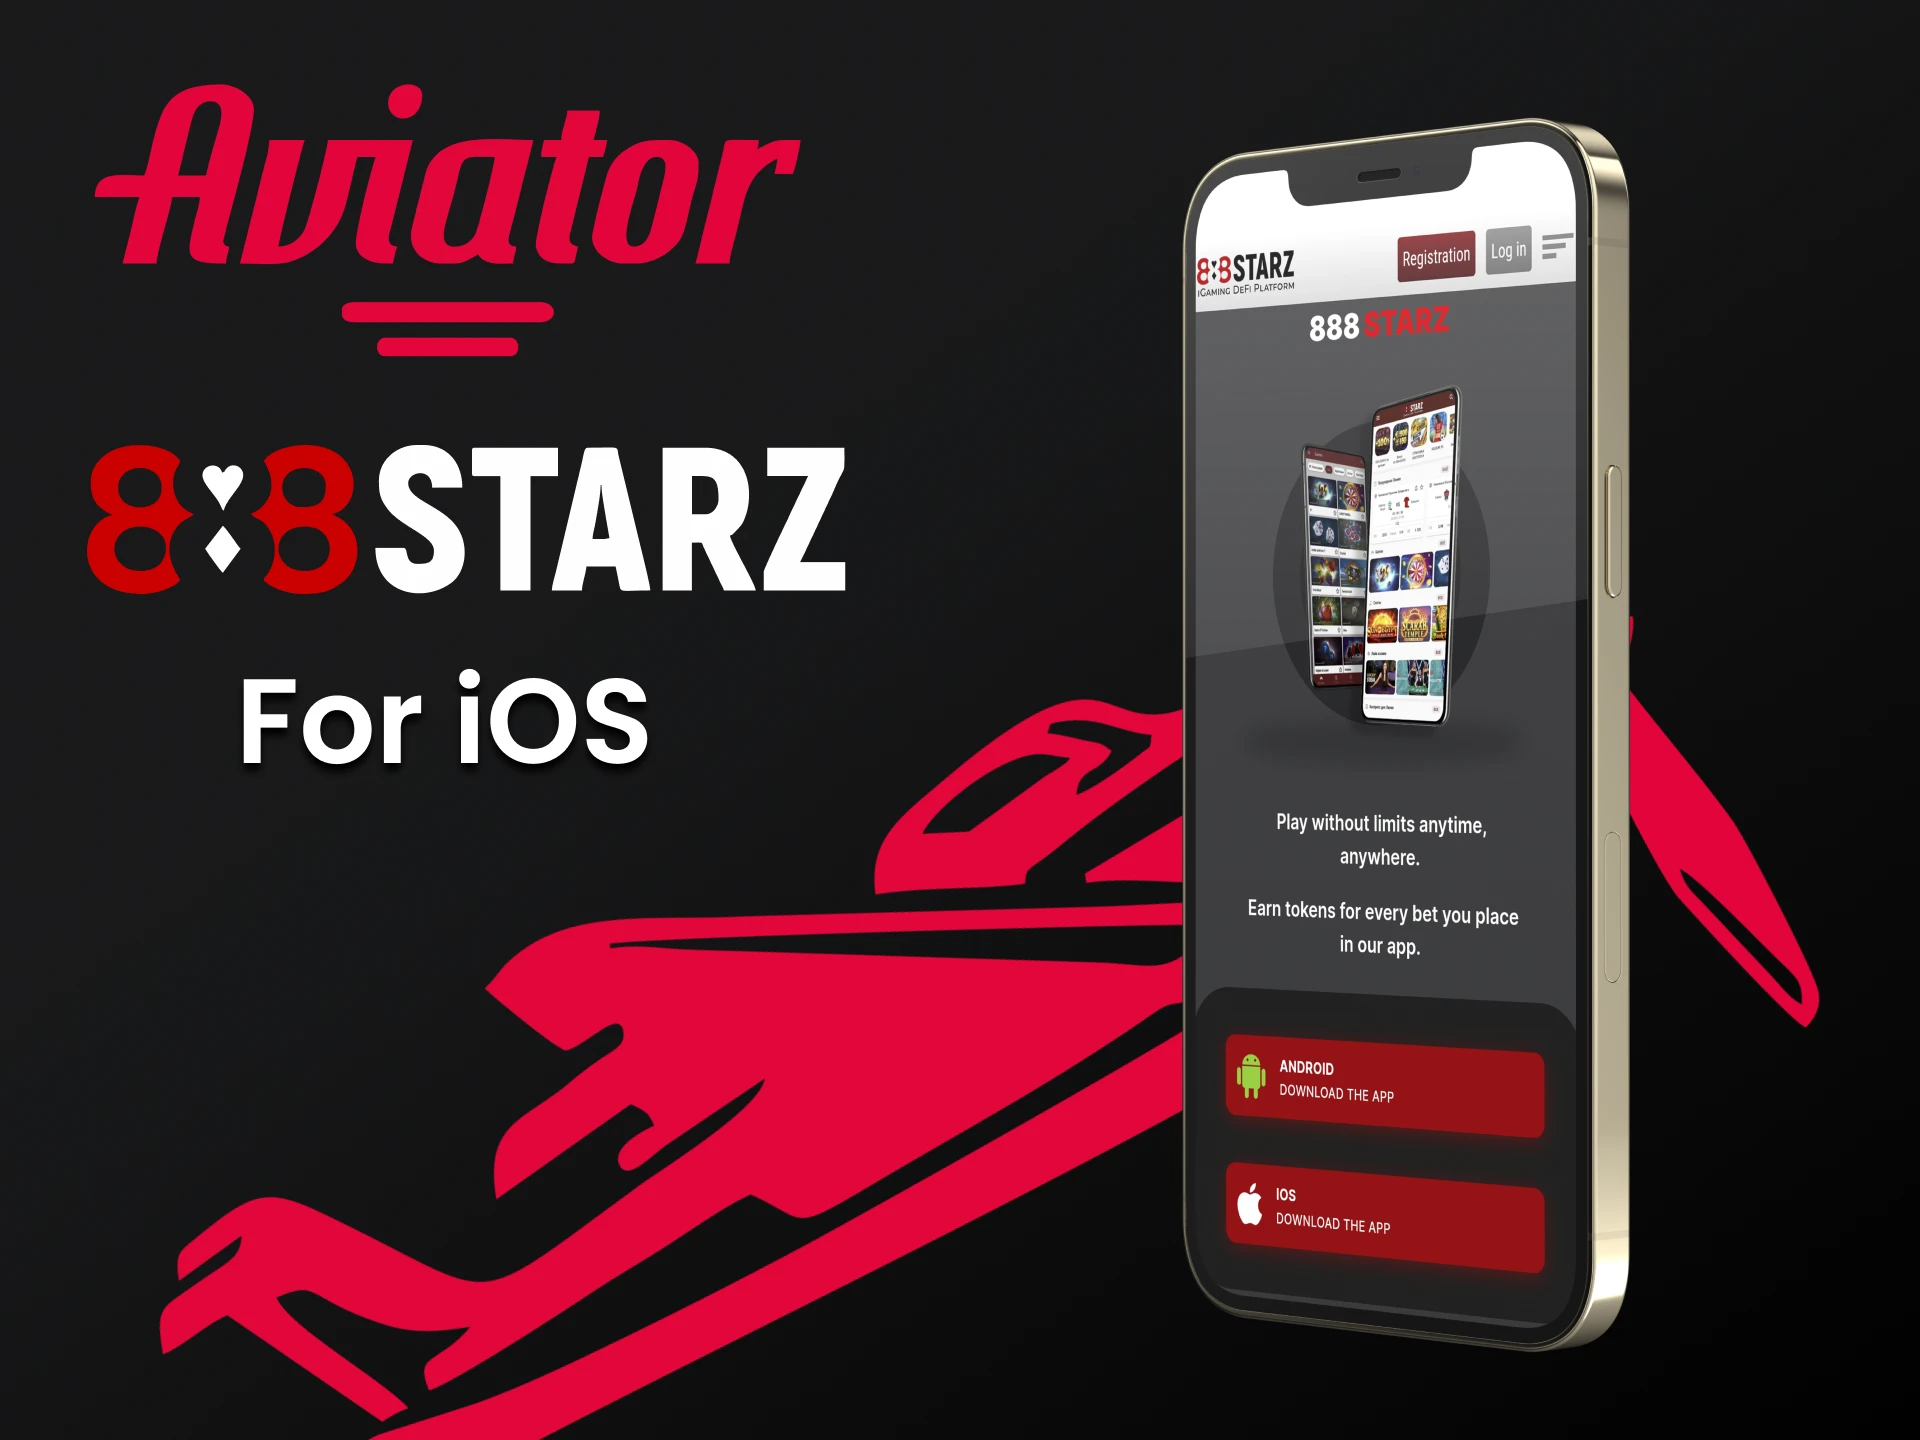 Baixe o aplicativo 888starz para iOS para jogar Aviator.